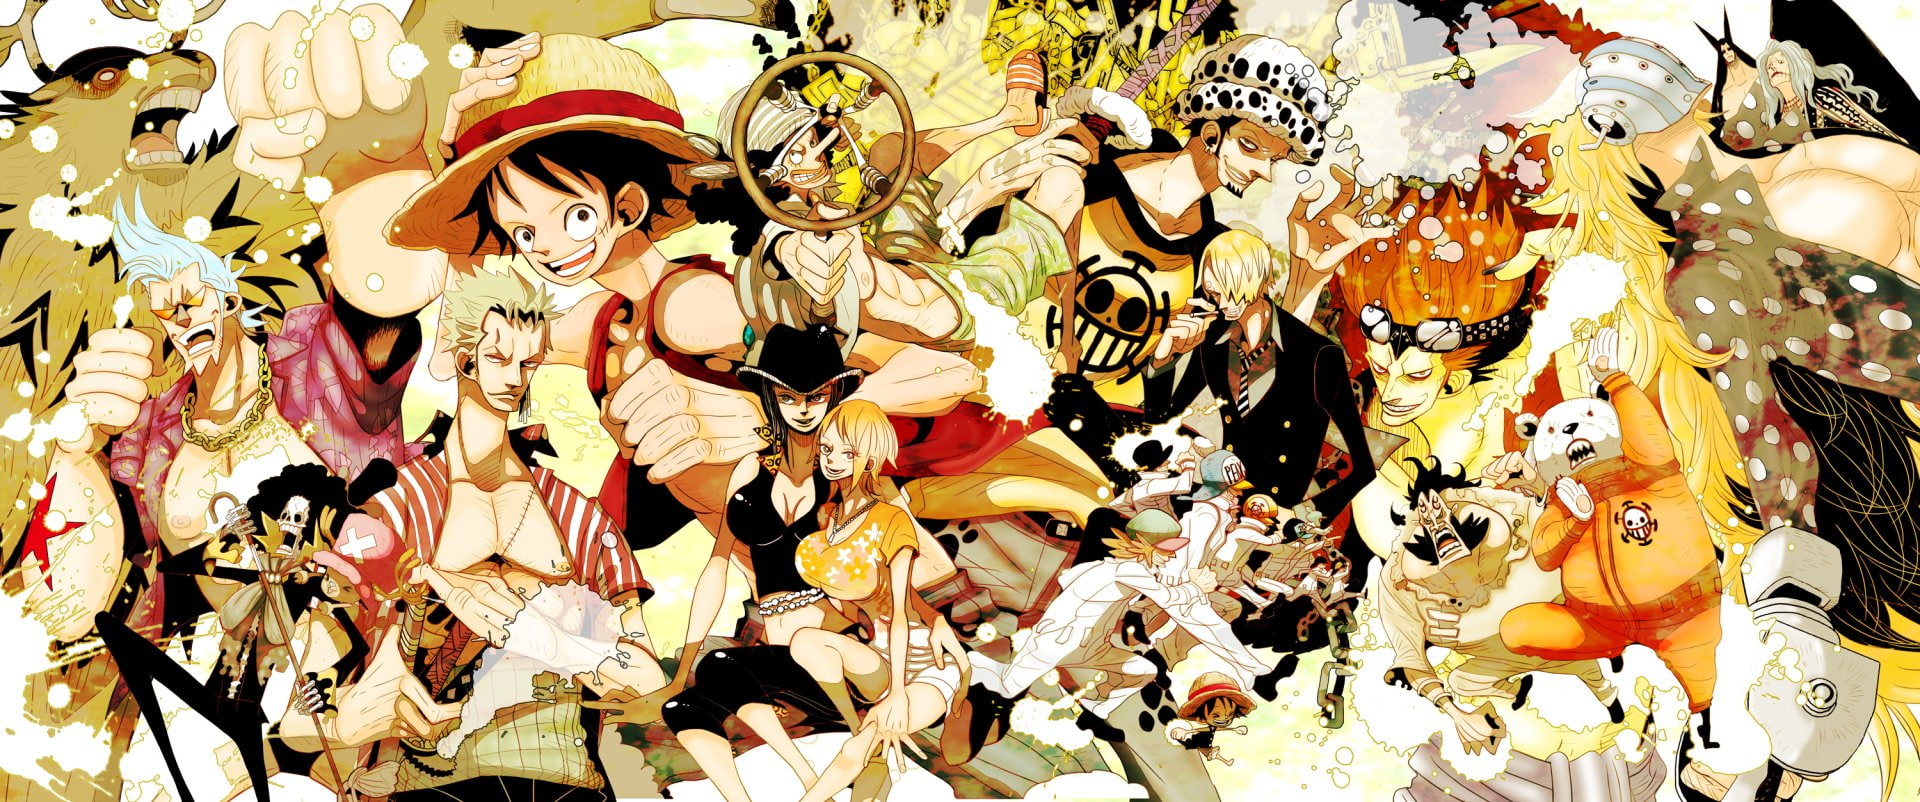 Anime, One Piece, Bepo (One Piece), Boy, Brook (One Piece)